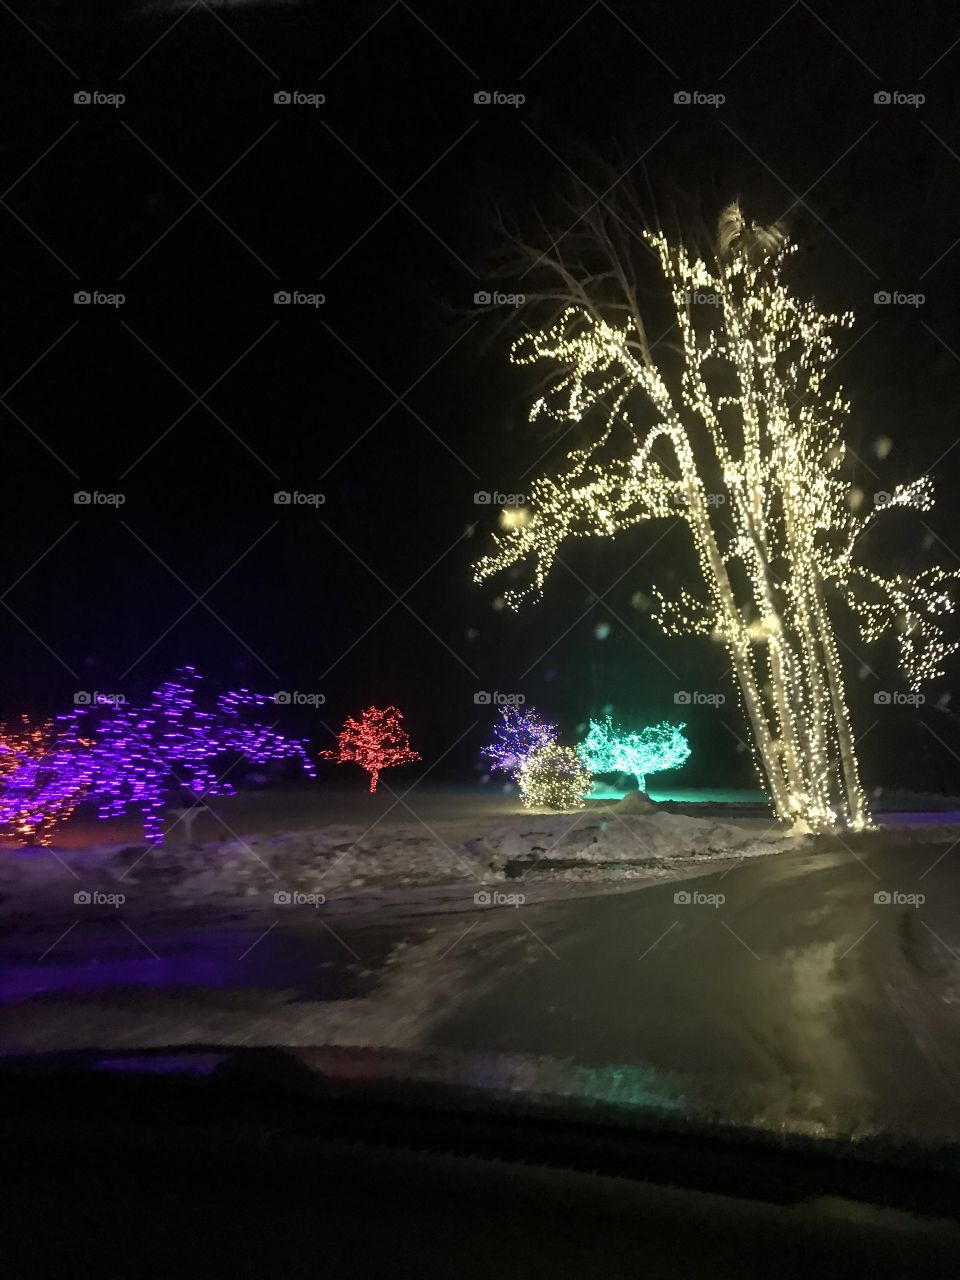 Tree lights